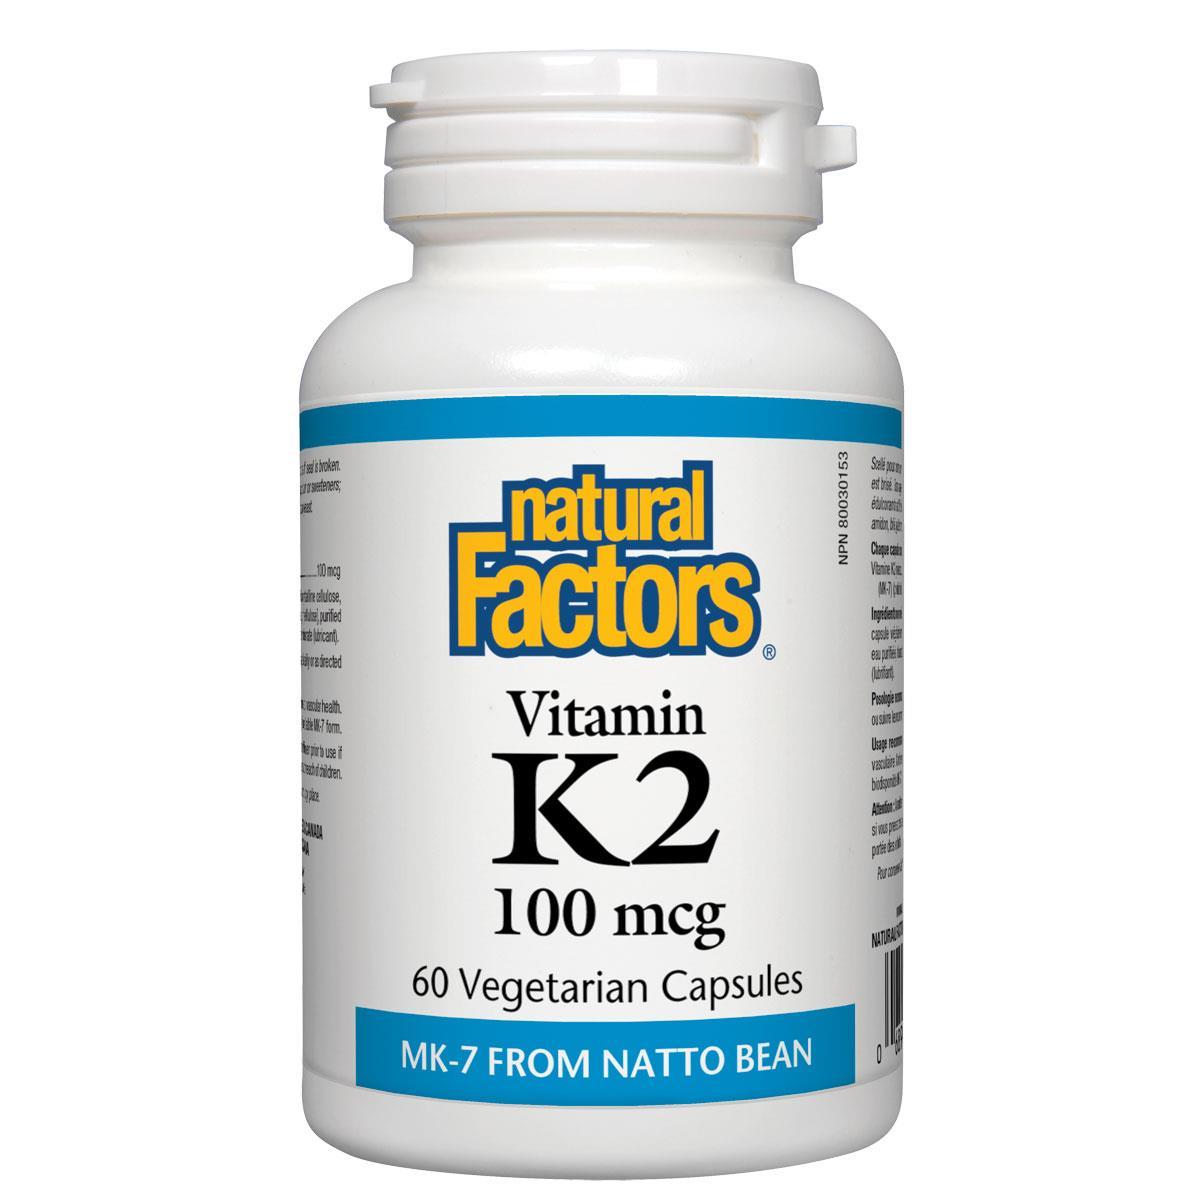 Natural Factors Vitamin K2 100mcg 60 VCaps